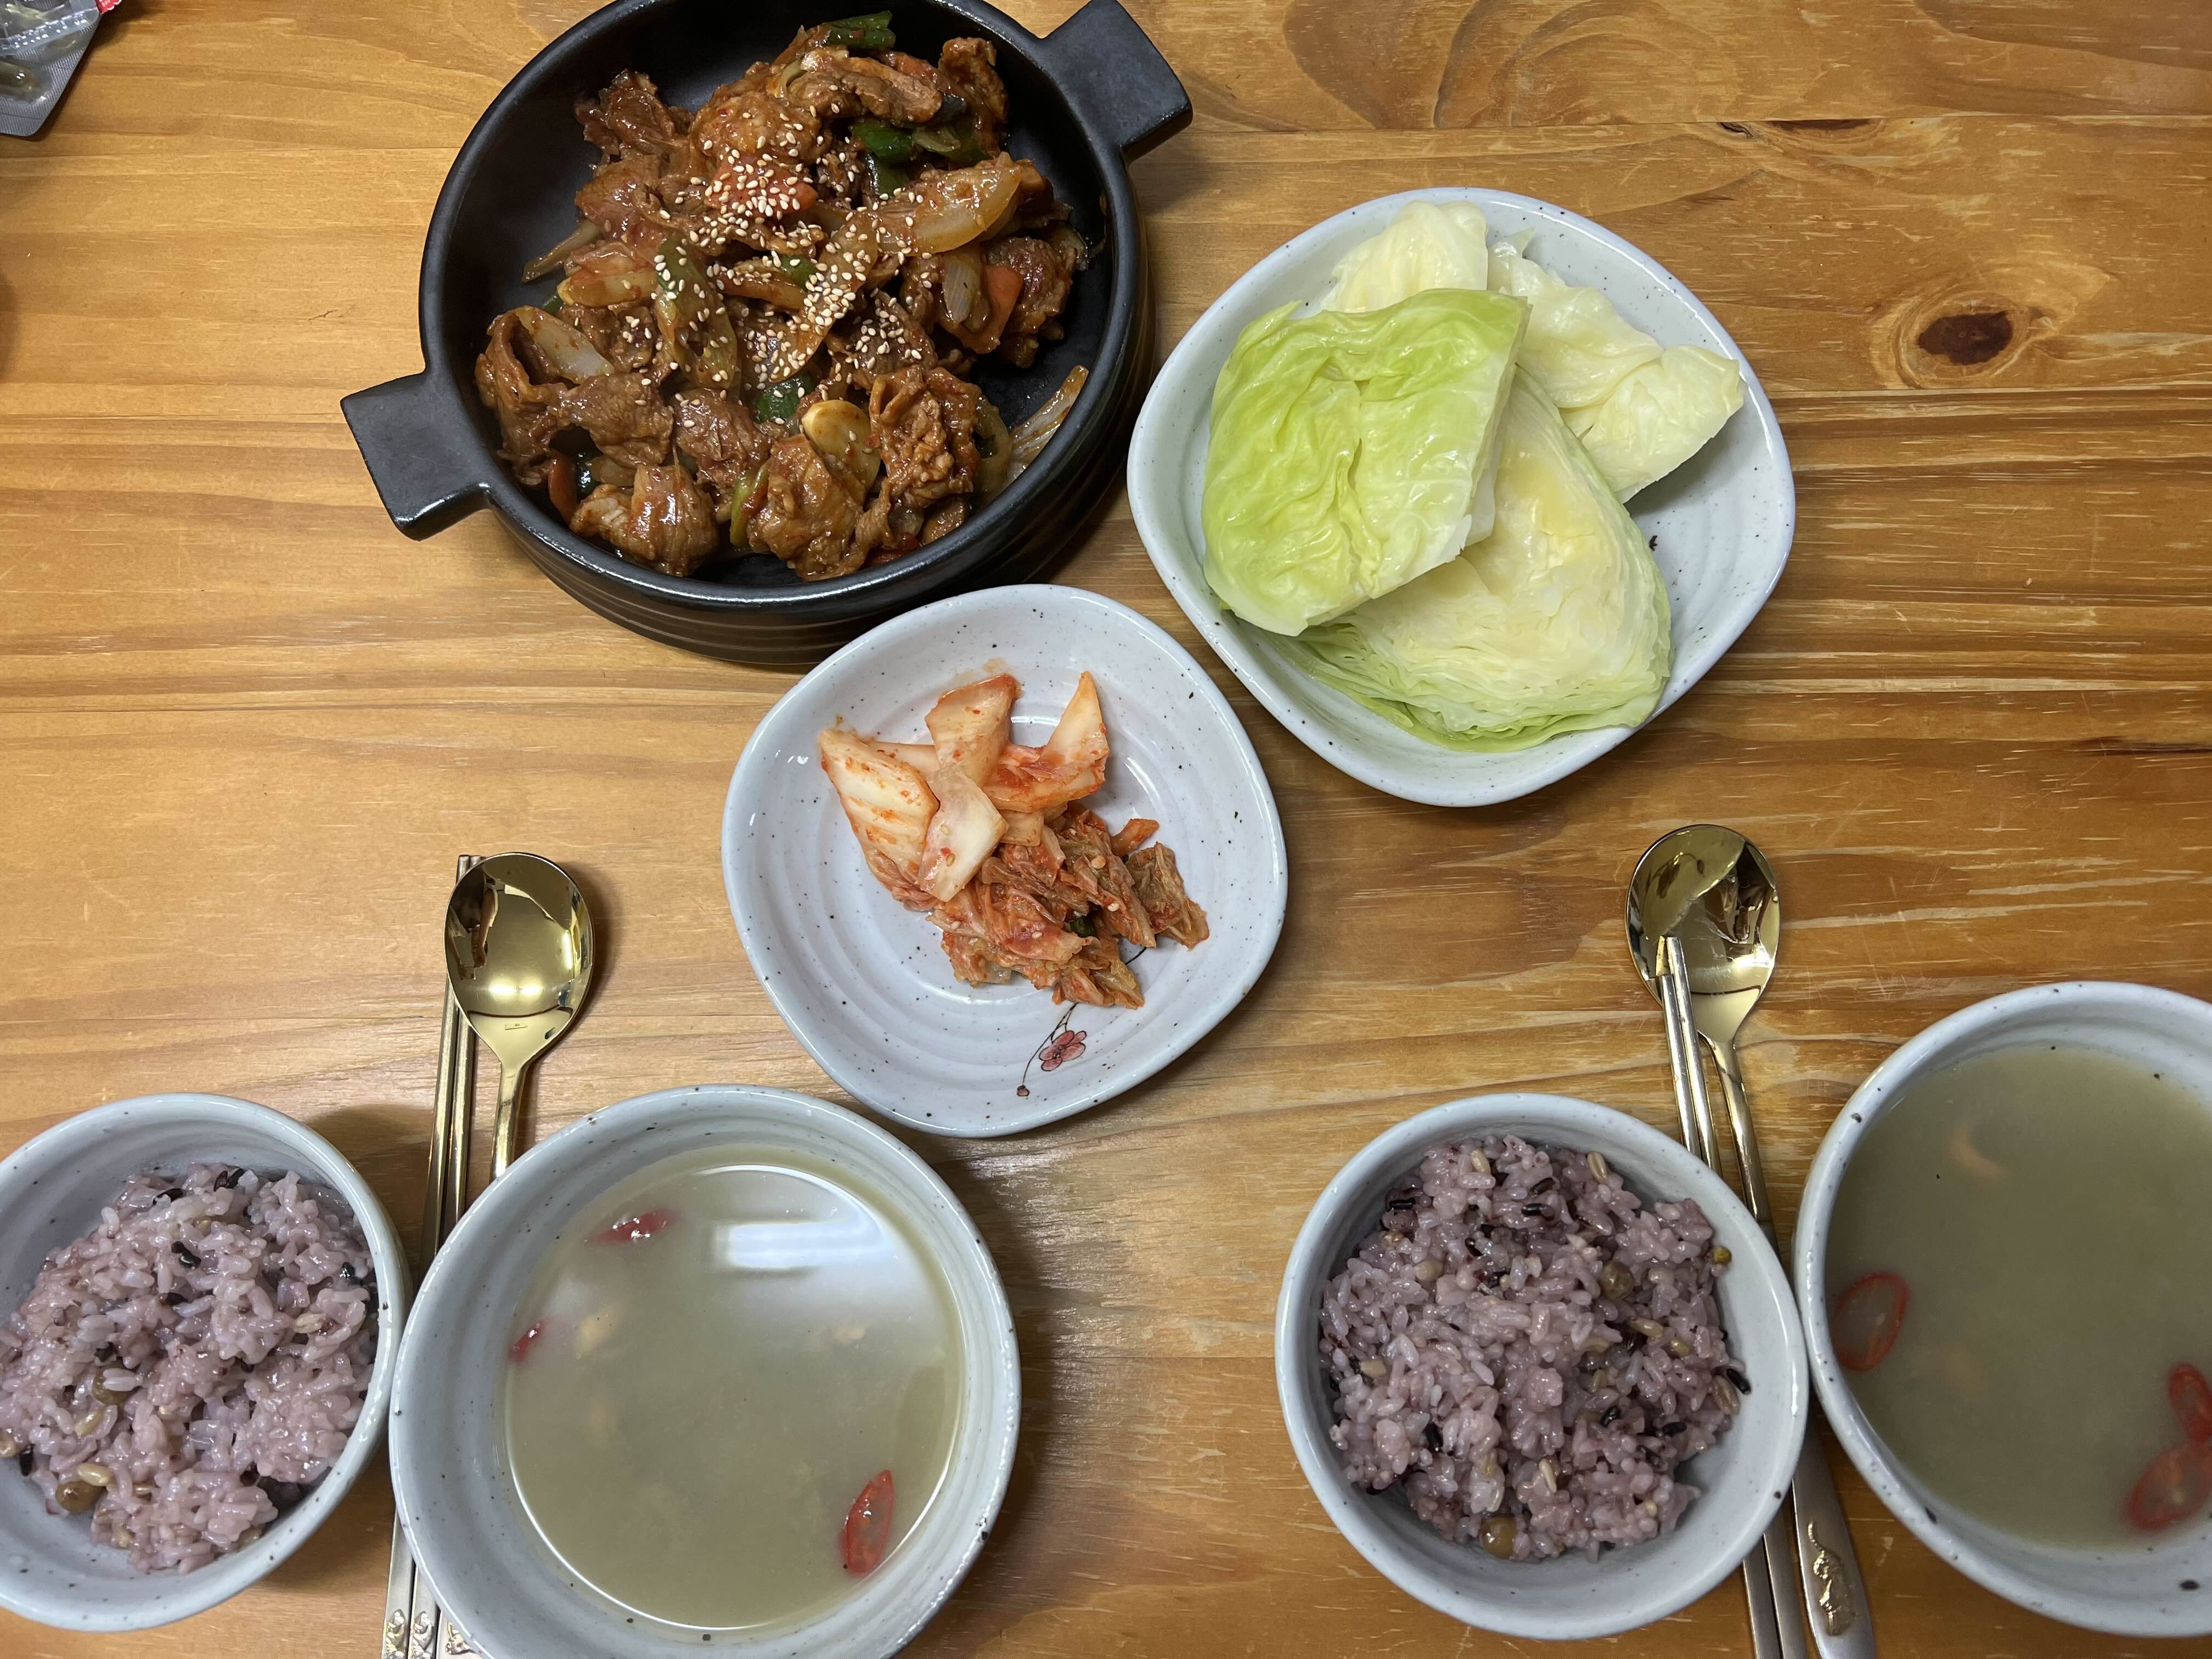 식탁 위에 돼지불고기, 양배추 쌈, 밥, 홍합탕, 김치가 놓여져 있는 사진